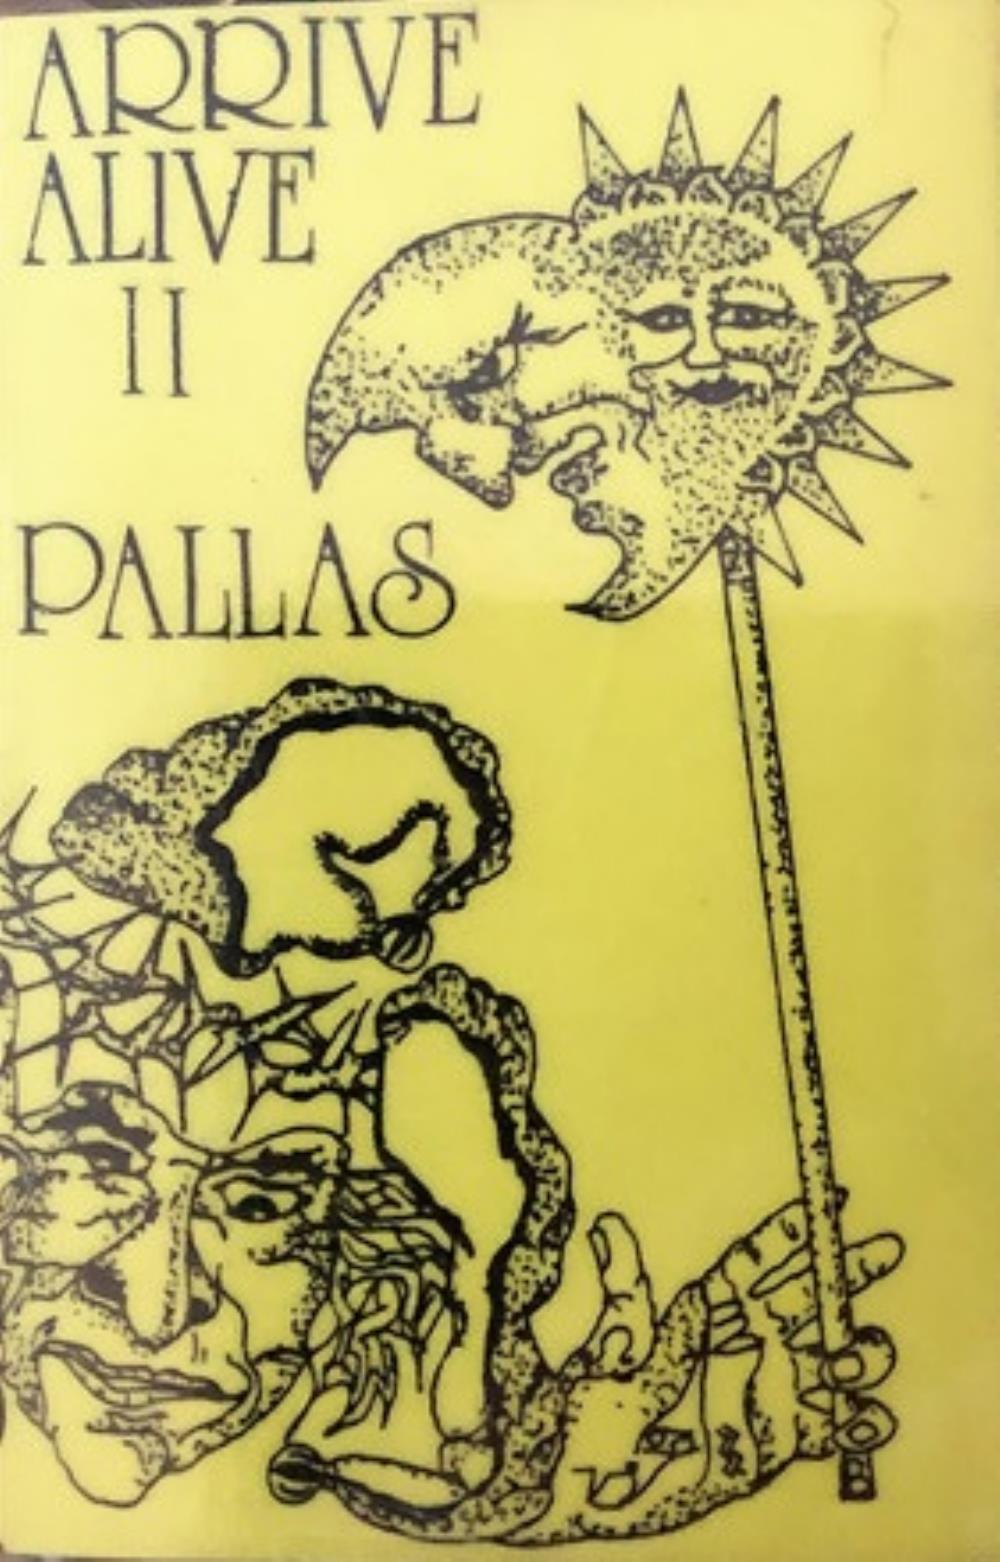 Pallas Arrive Alive album cover